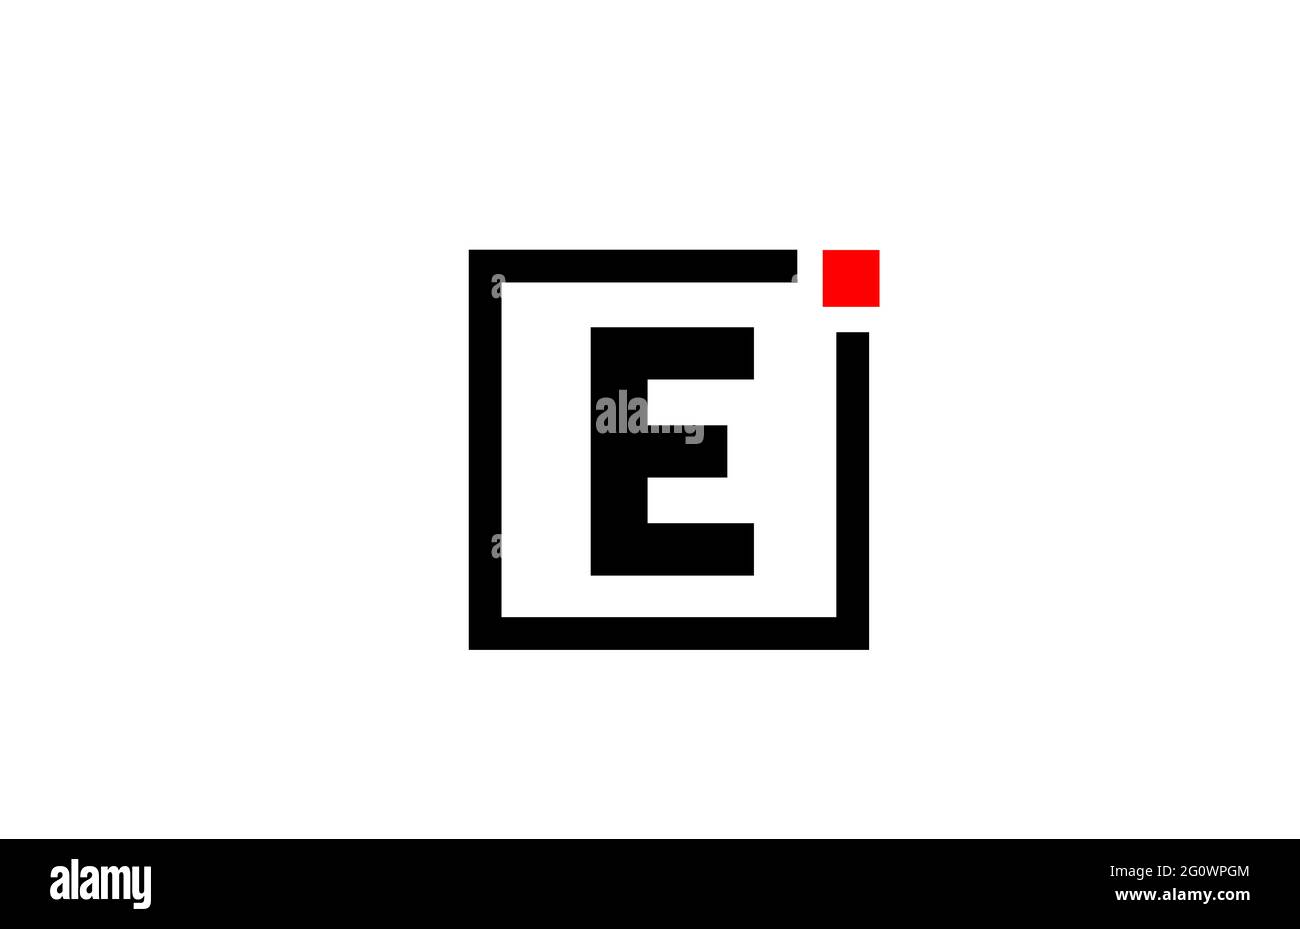 E Logo con l'icona della lettera alfabetica in bianco e nero. Design aziendale e aziendale con punto quadrato e rosso. Modello di identità aziendale creativa Foto Stock